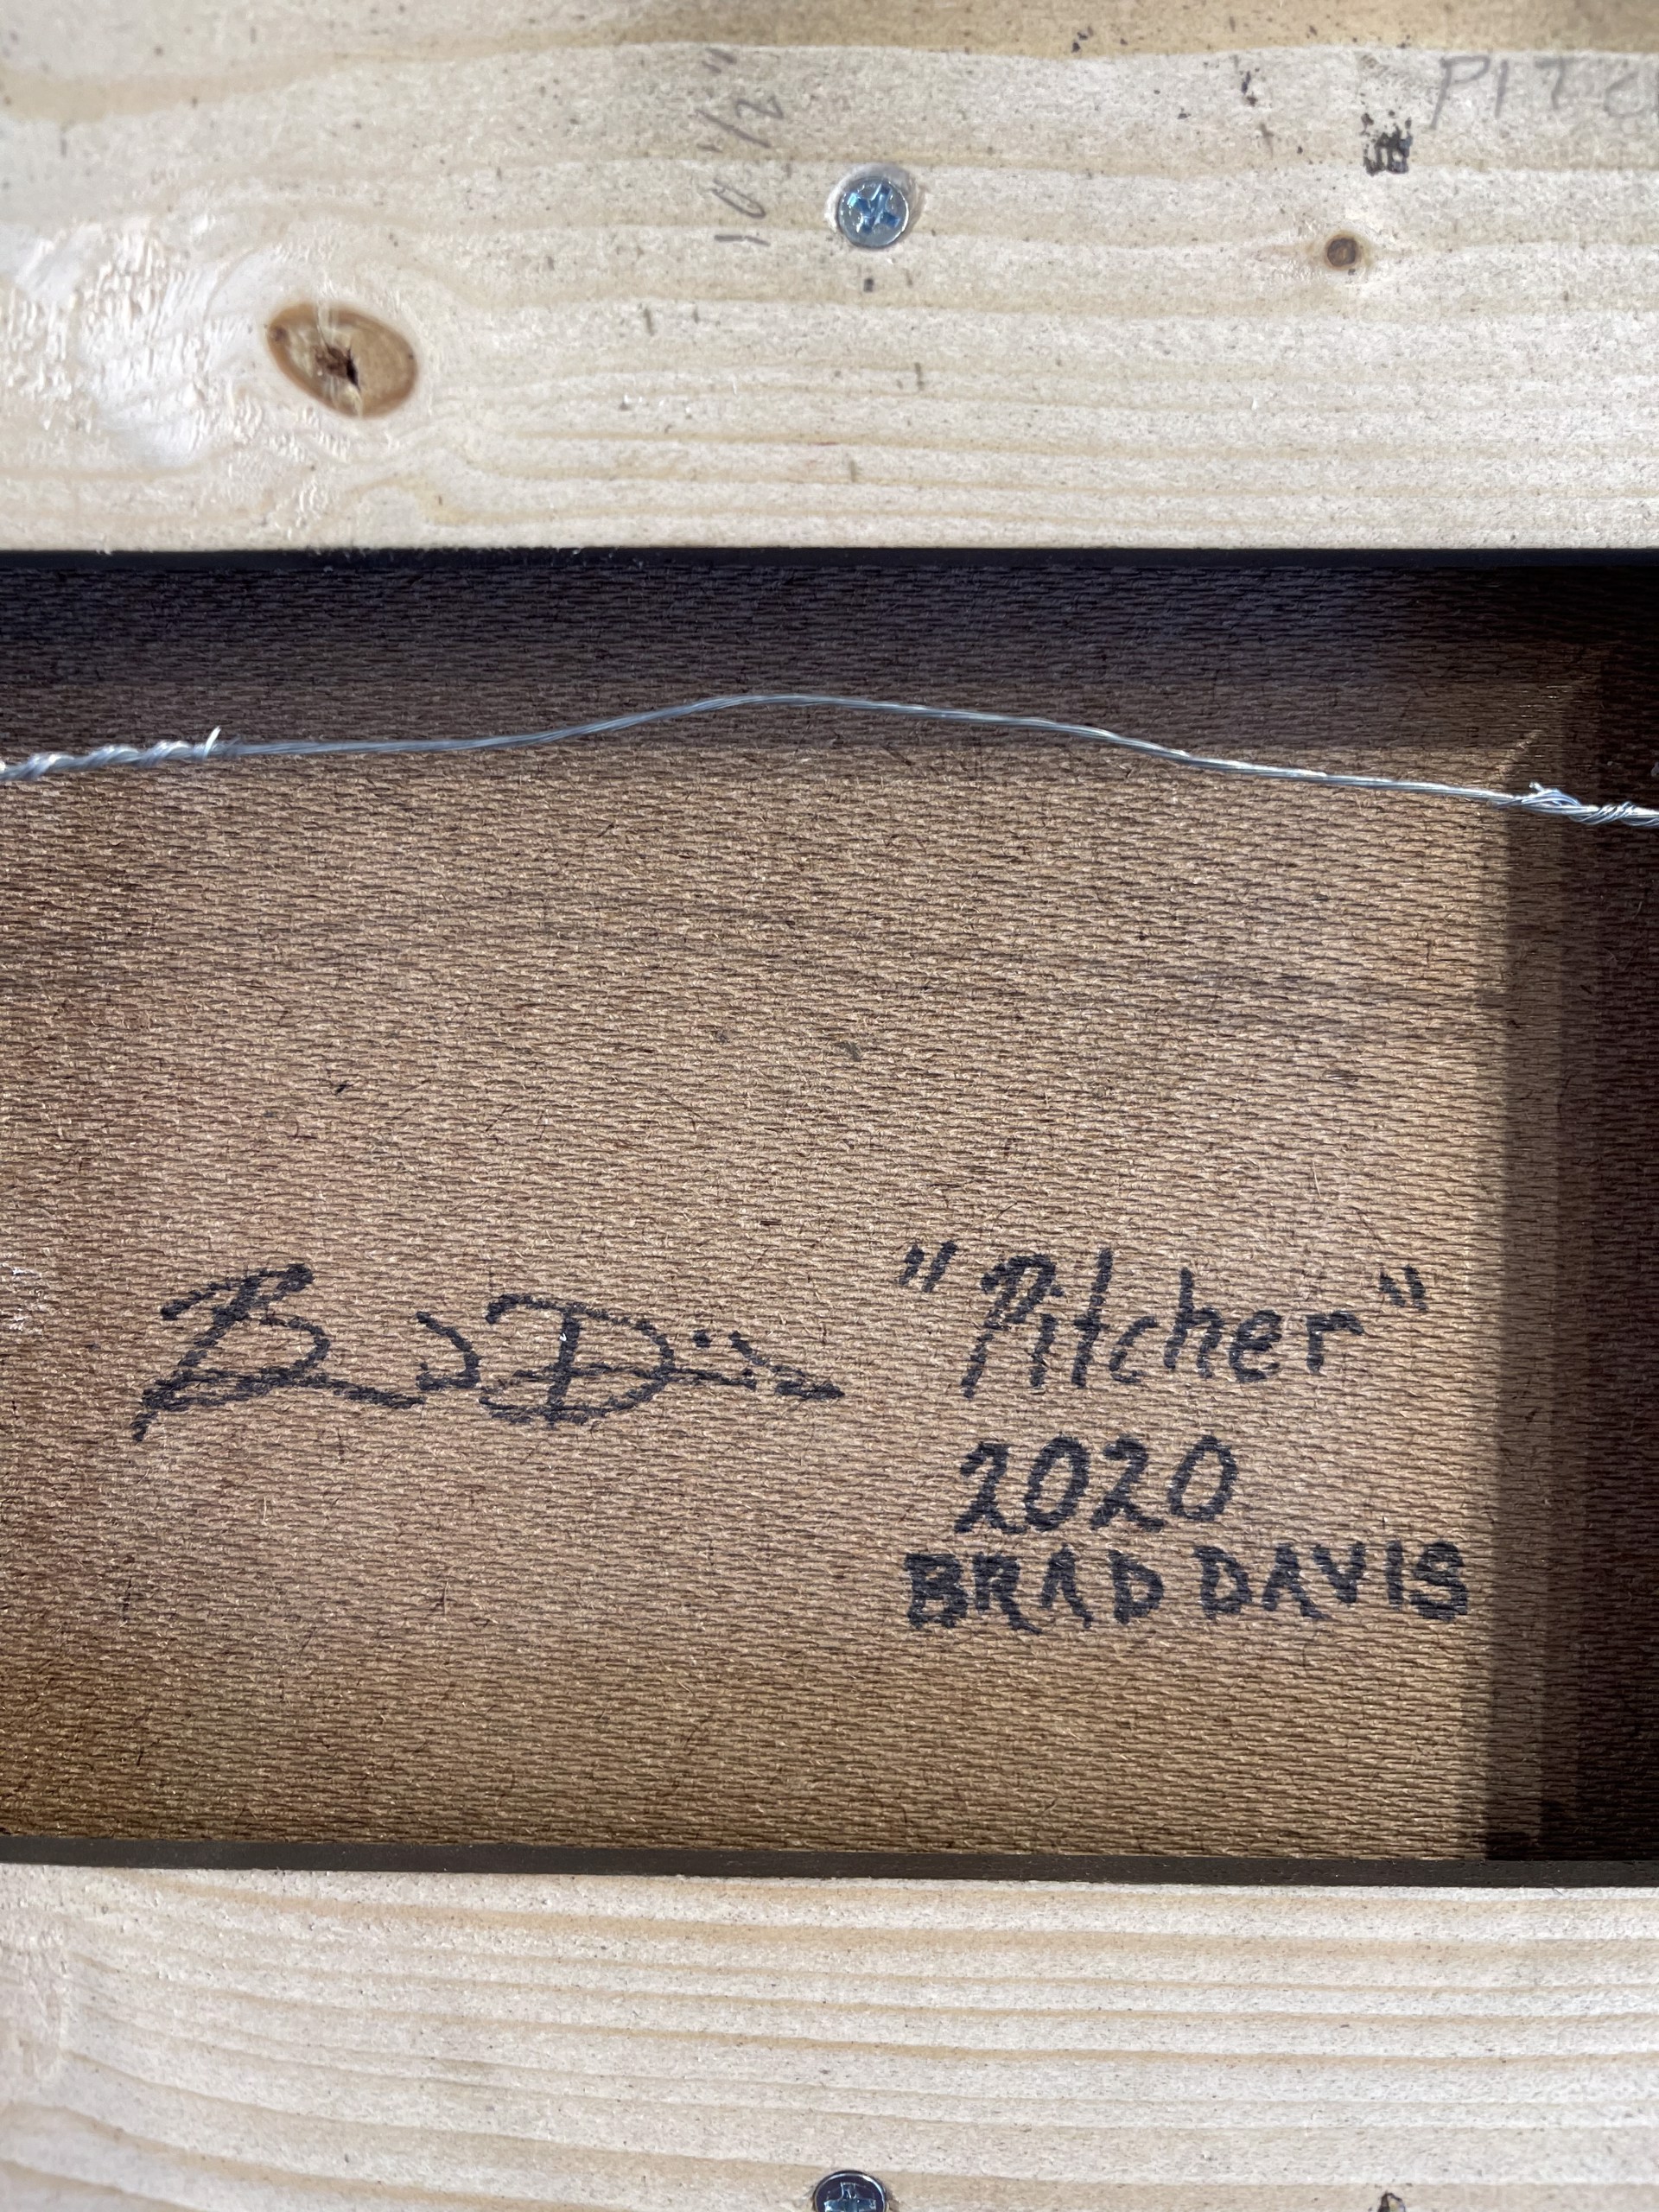 Pitcher by Brad Davis